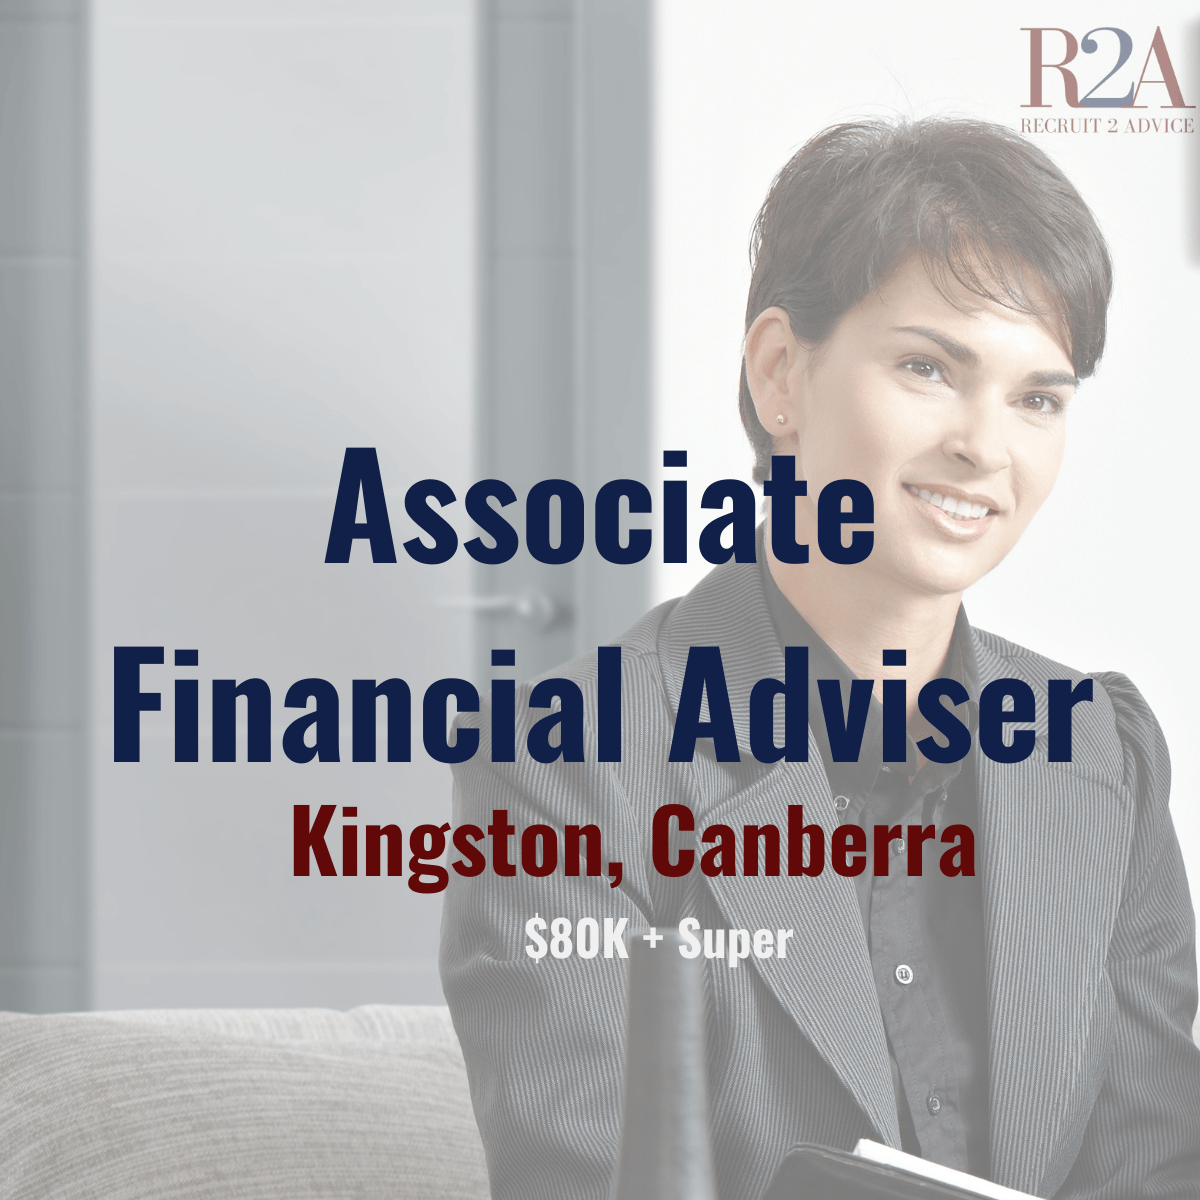 Recruit 2 Advice | Financial Planning Recruitment | Associate Financial Adviser